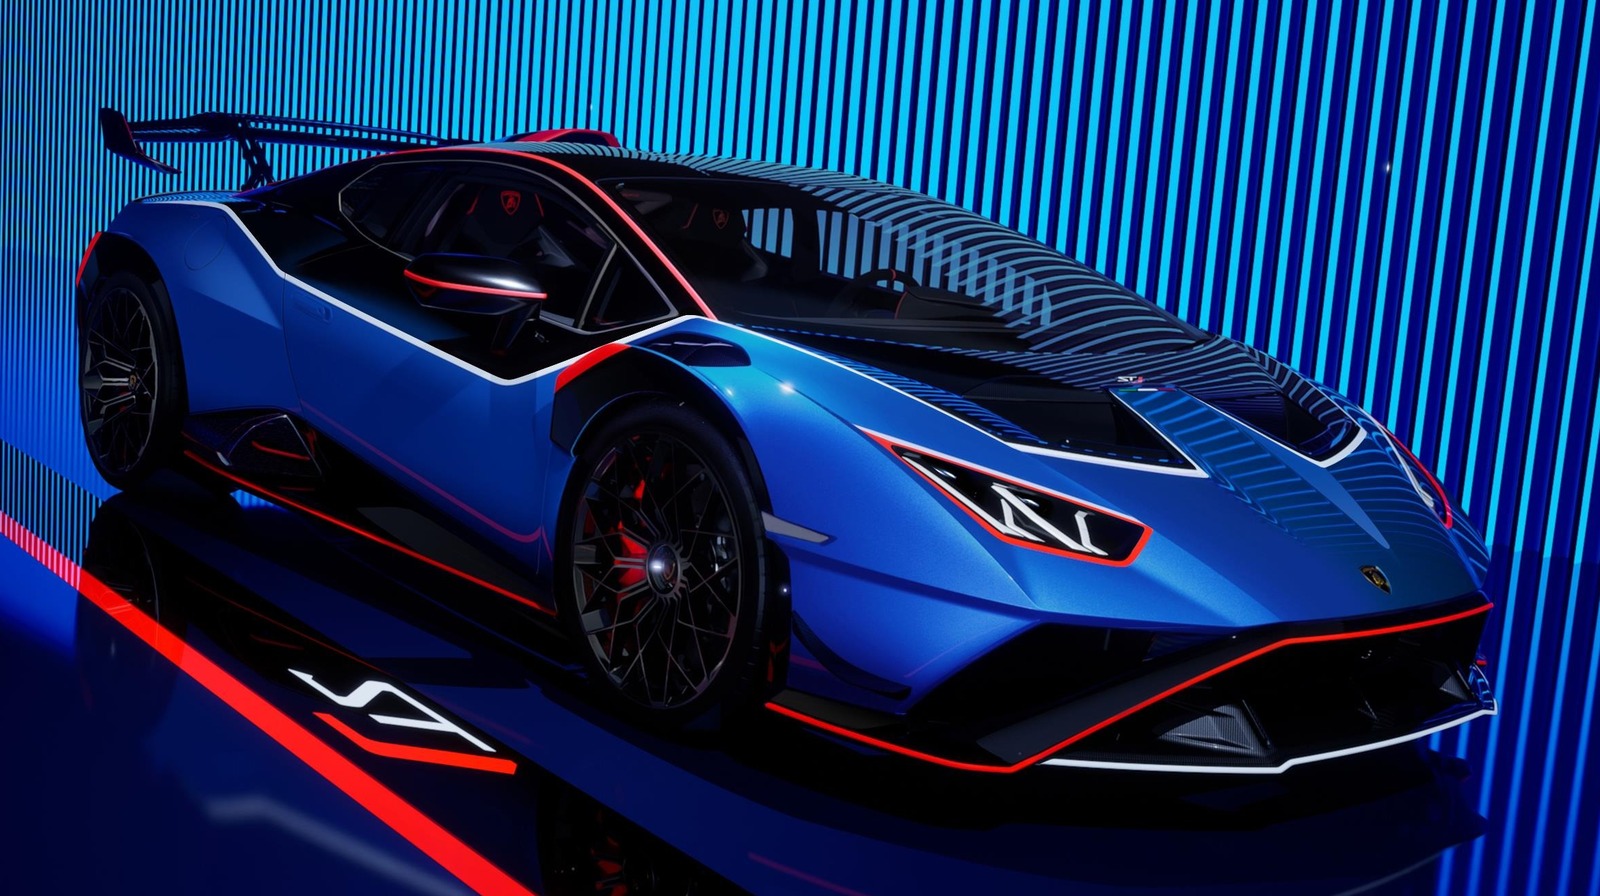 Lamborghini ha terminado con el Huracán, esto es lo que sabemos sobre su sucesor híbrido